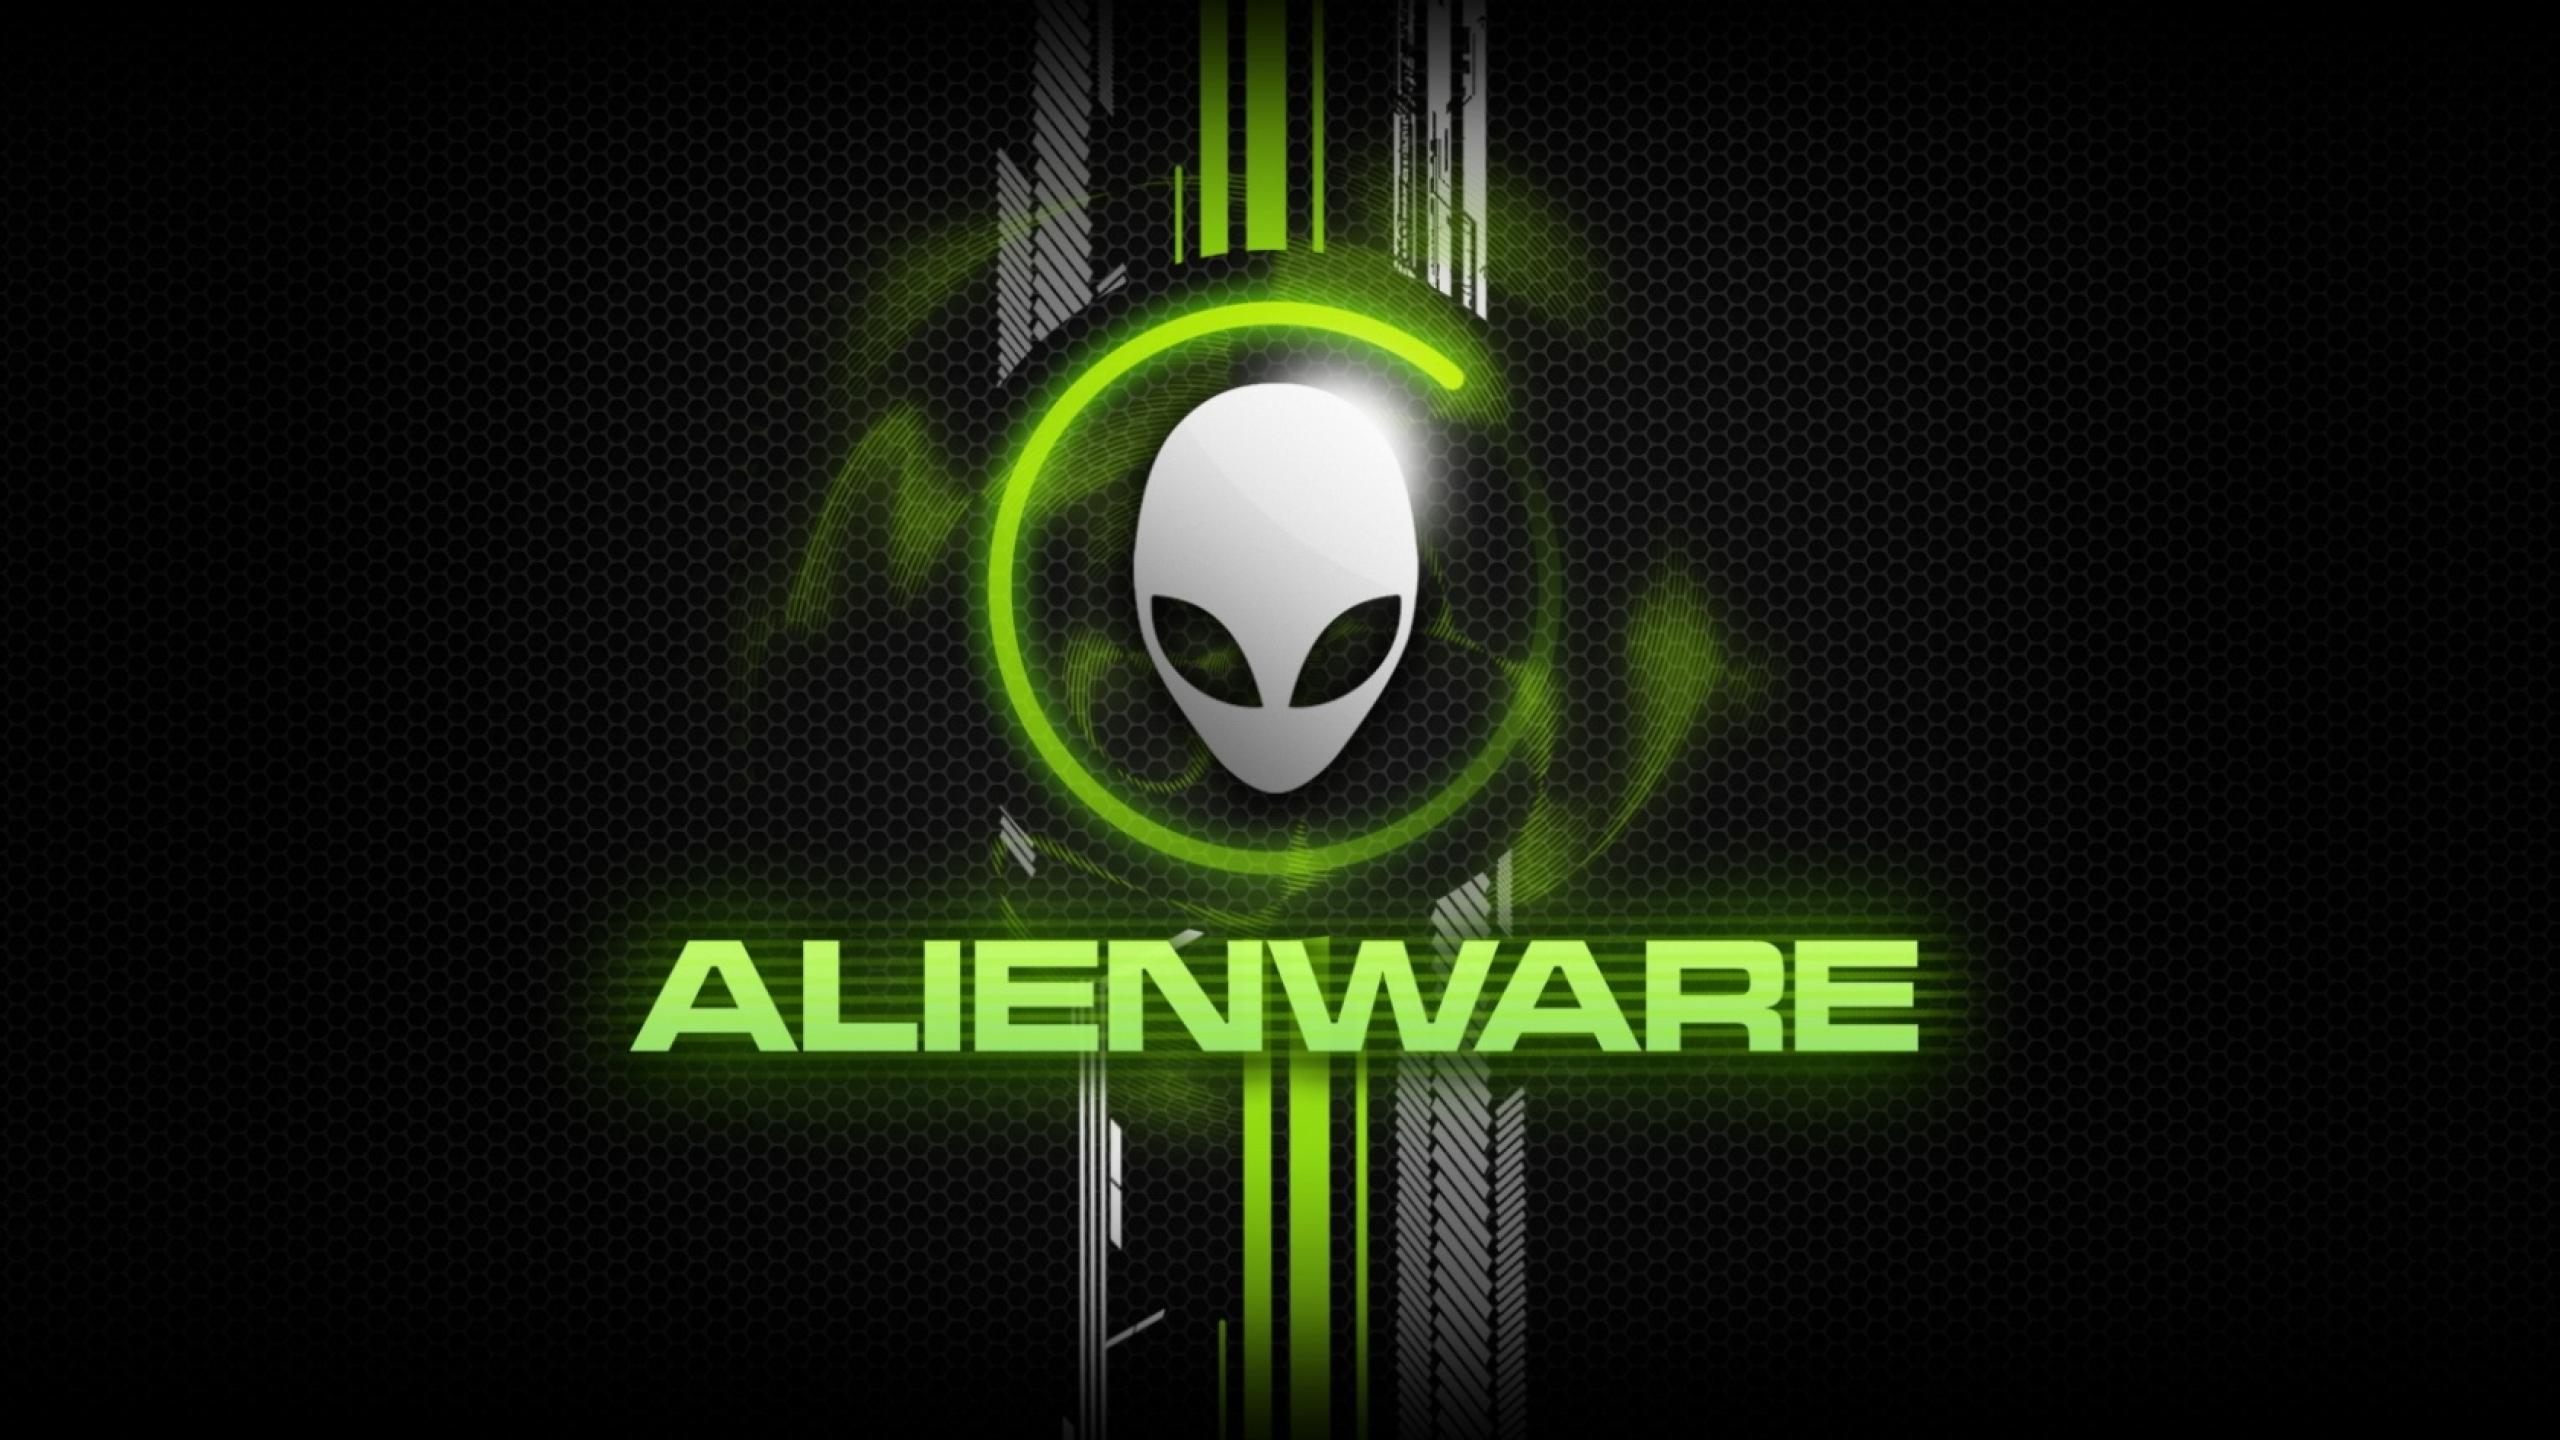 Alienware Wallpaper For Windows